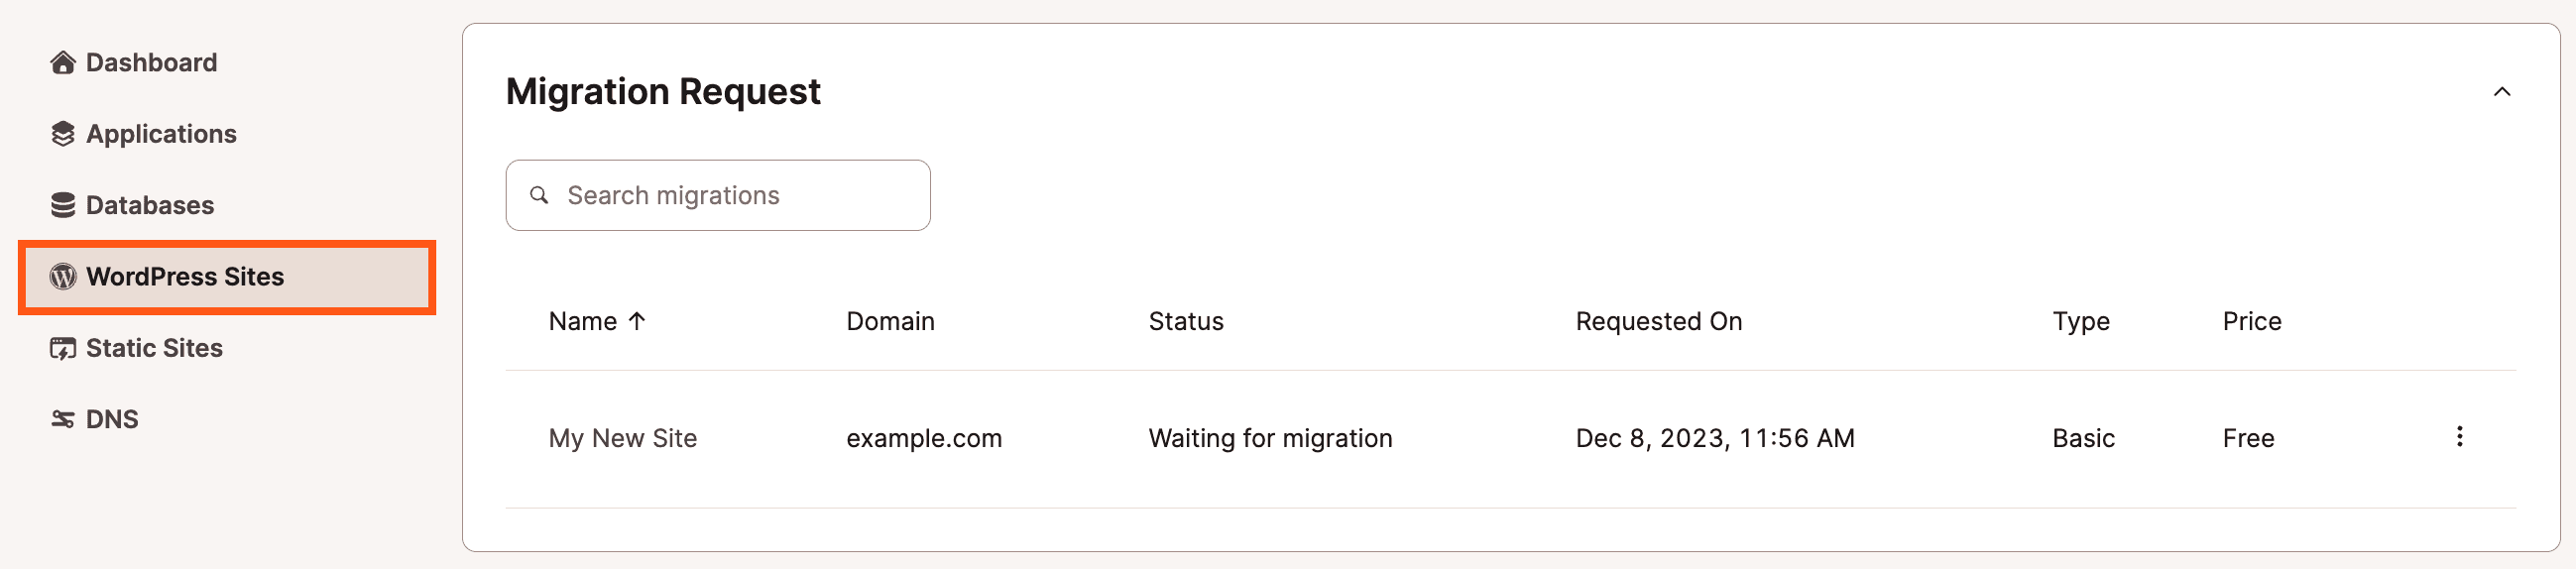 Veja as solicitações de migração em sua página de Sites WordPress no MyKinsta.